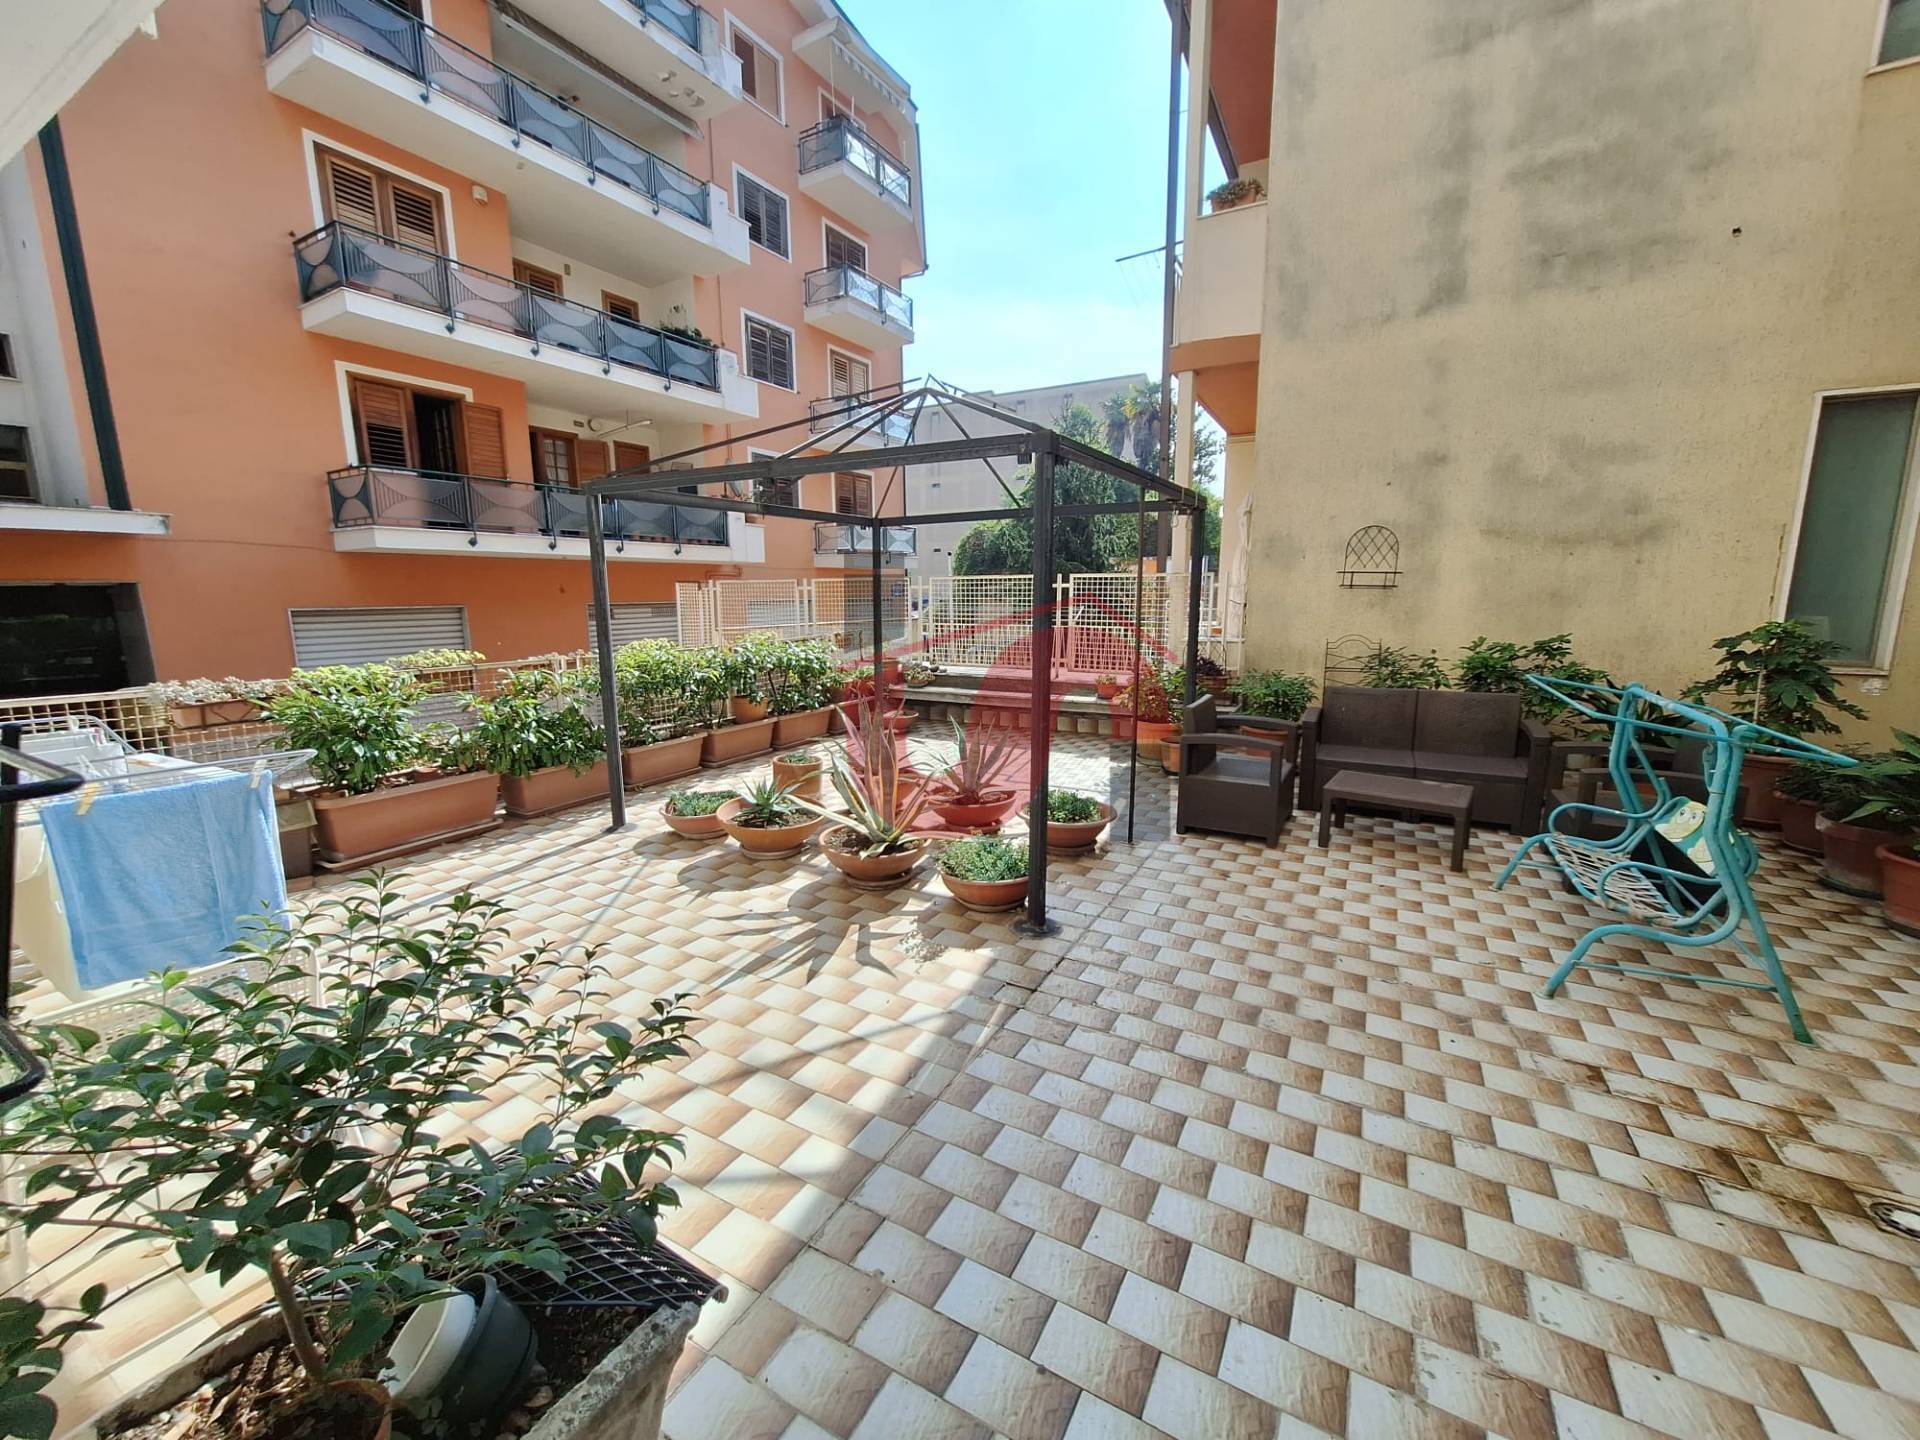 Appartamento in vendita a San Giorgio del Sannio, 7 locali, prezzo € 195.000 | PortaleAgenzieImmobiliari.it